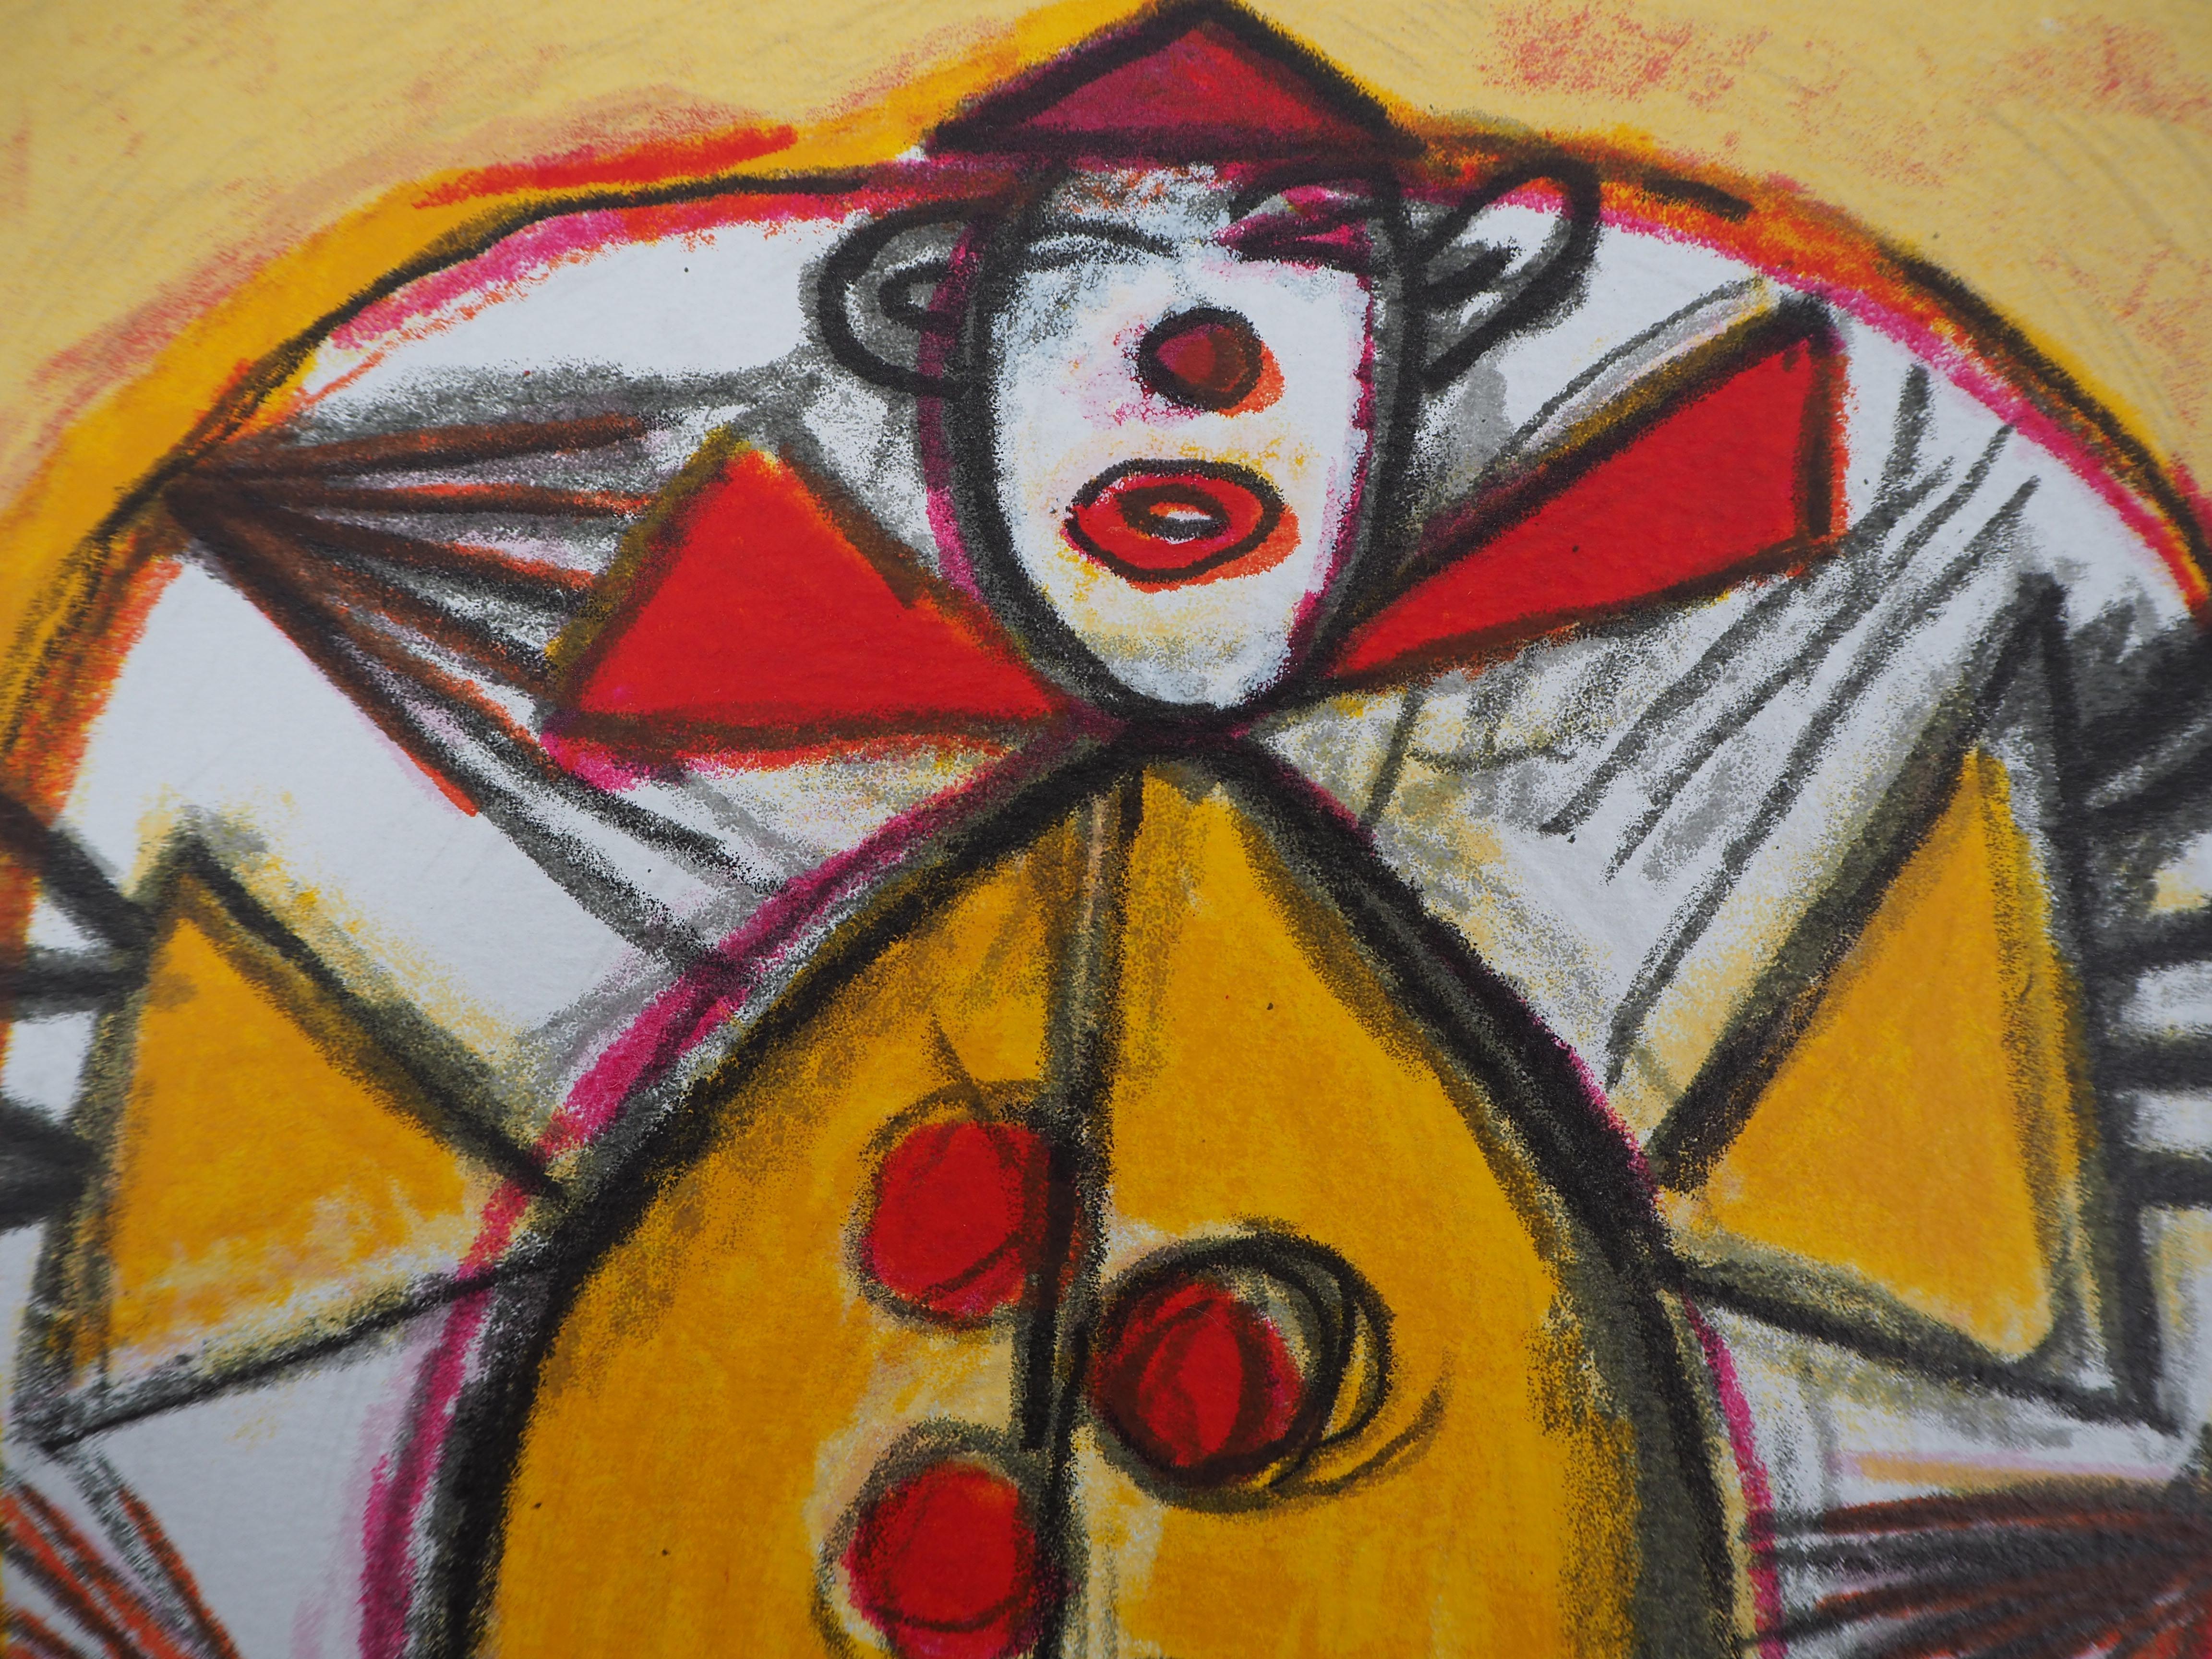 Corneille
Kleiner Clown in Rot und Gelb

Original-Lithographie 
Handsigniert
Gerechtfertigte EA
Auf Pergament 40 x 31,5 cm (ca. 16 x 12,5 Zoll)

Ausgezeichneter Zustand